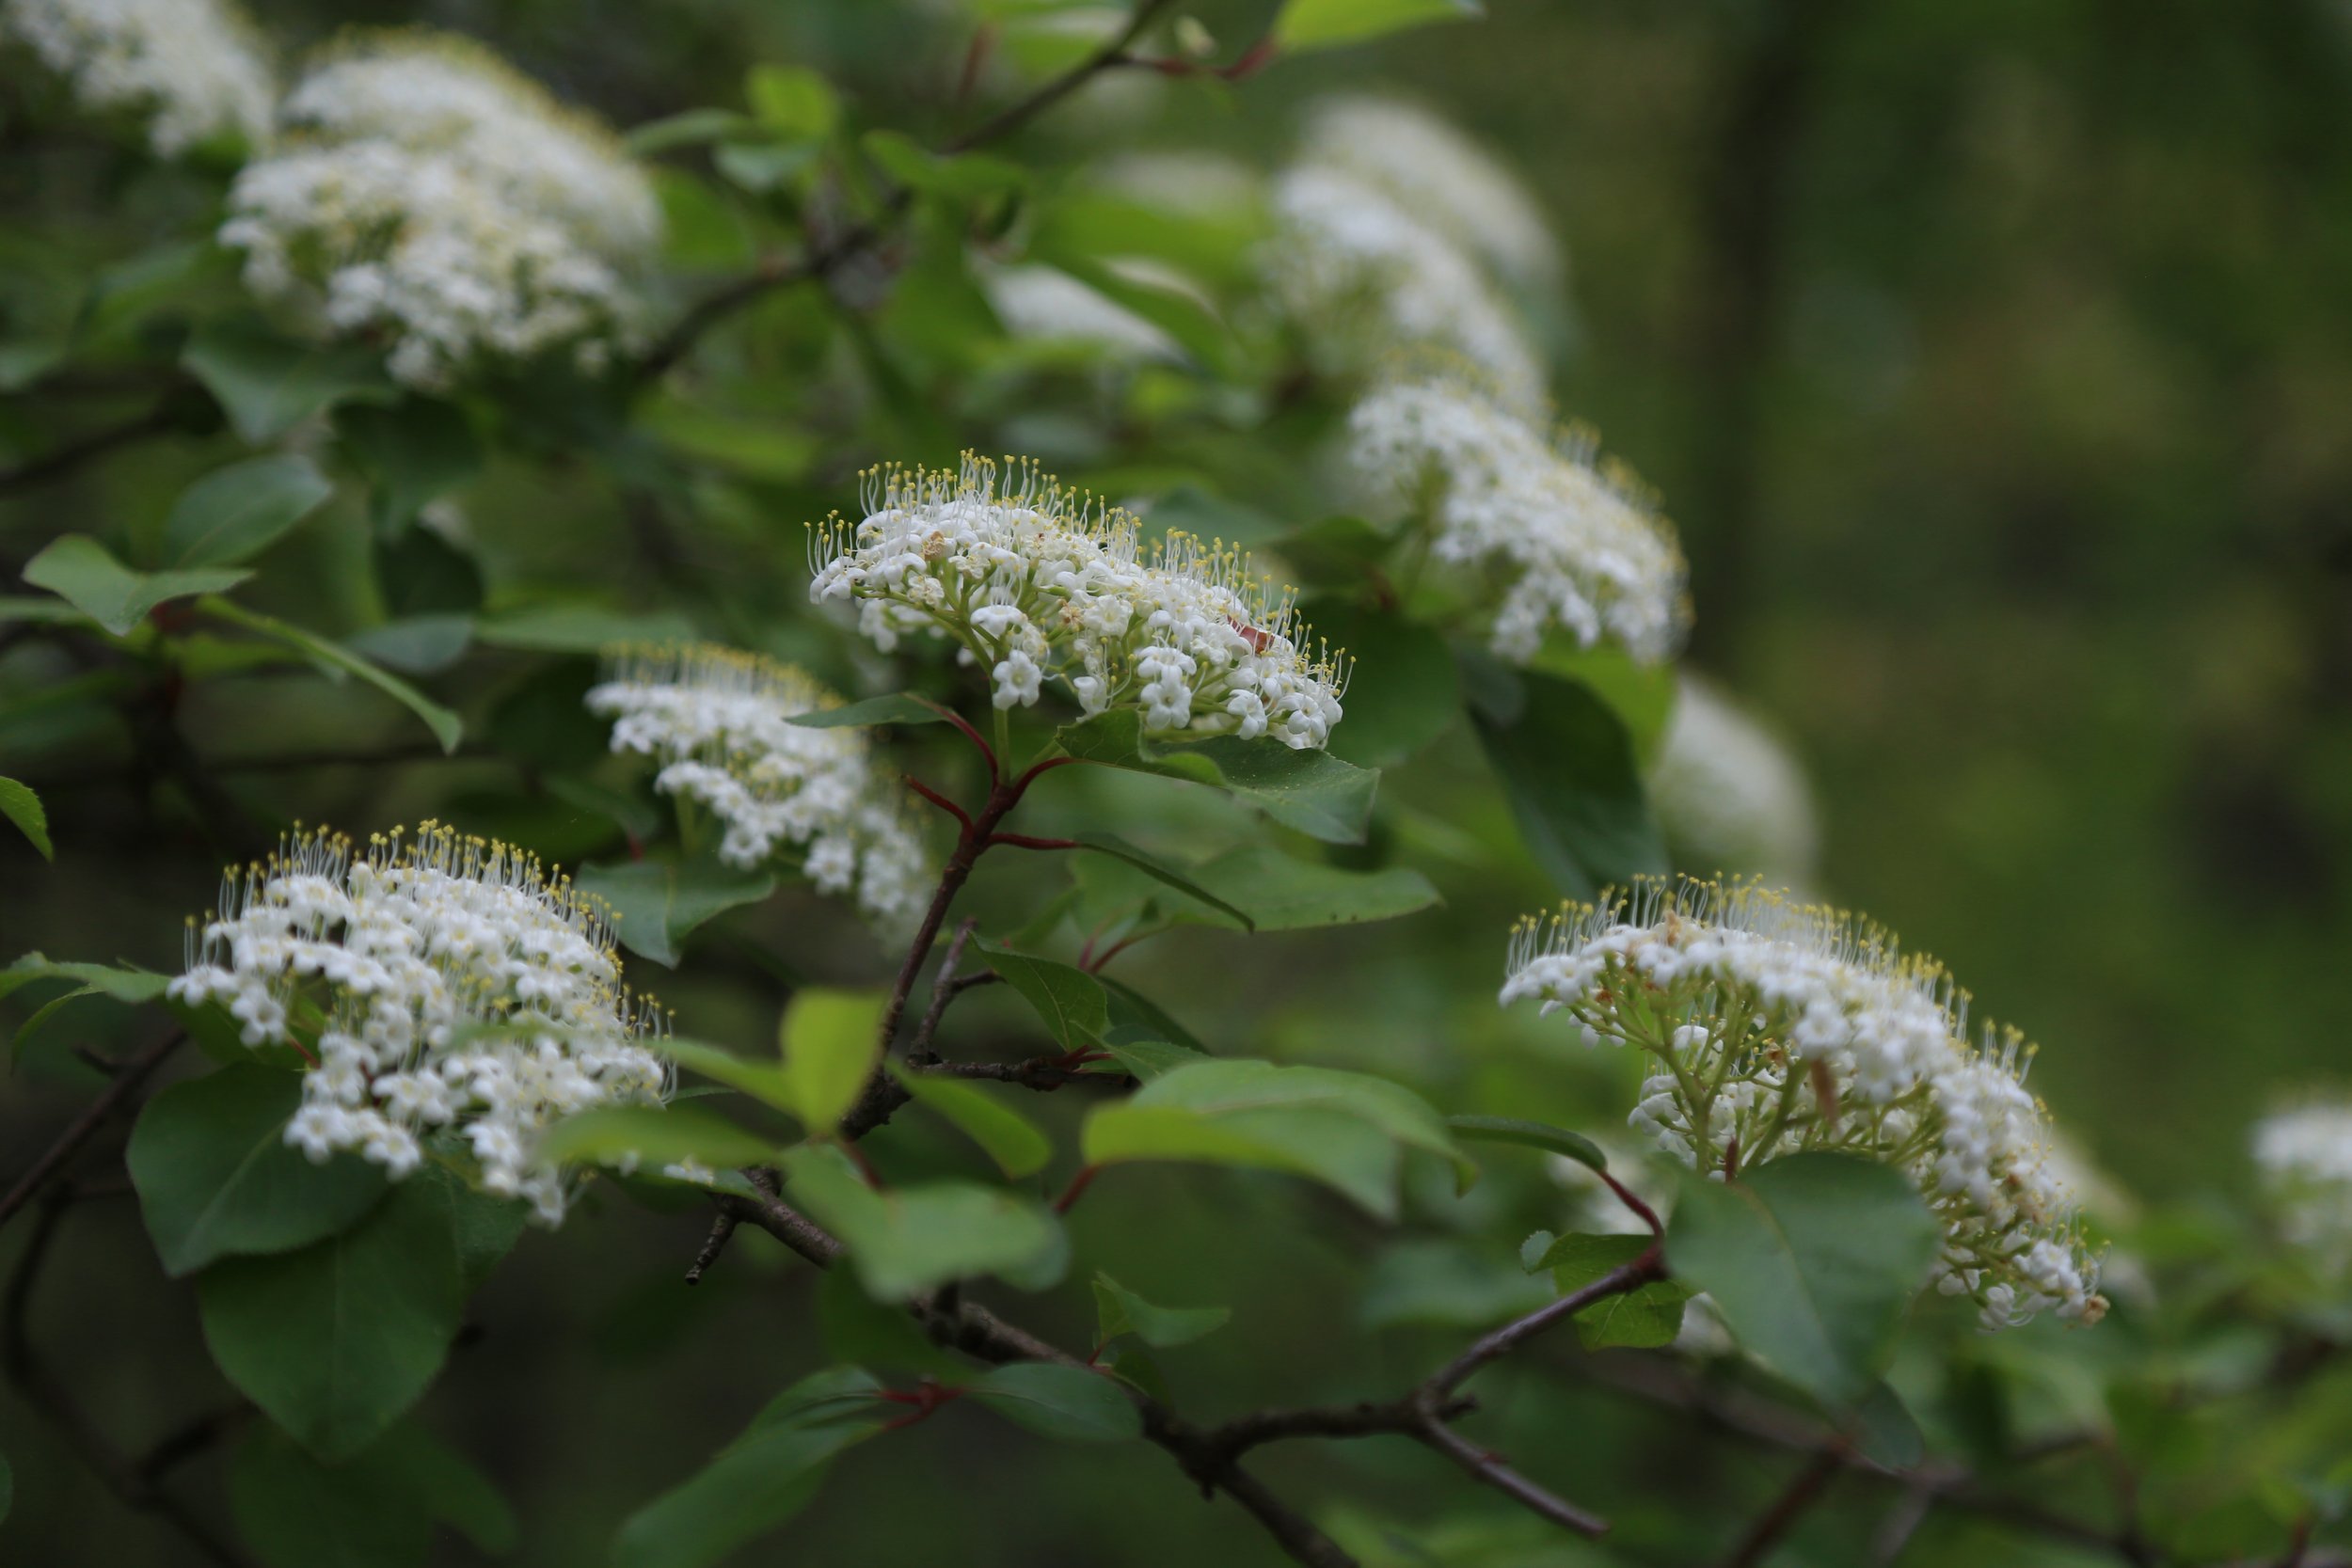  Blackhaw (Viburnumm prunifolium) 